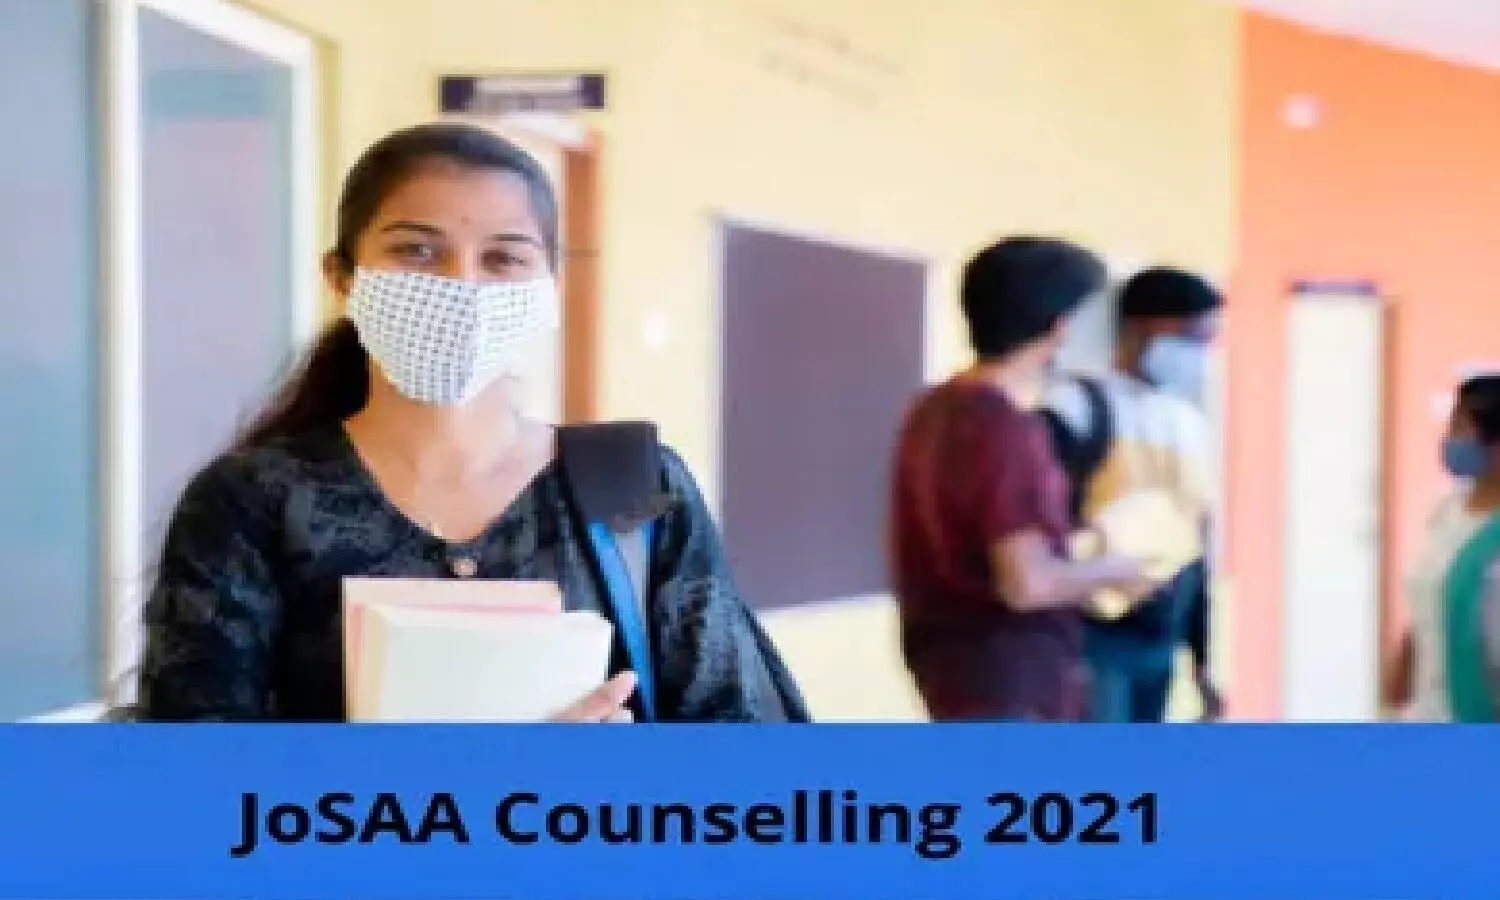 JOSSA Counseling 2021